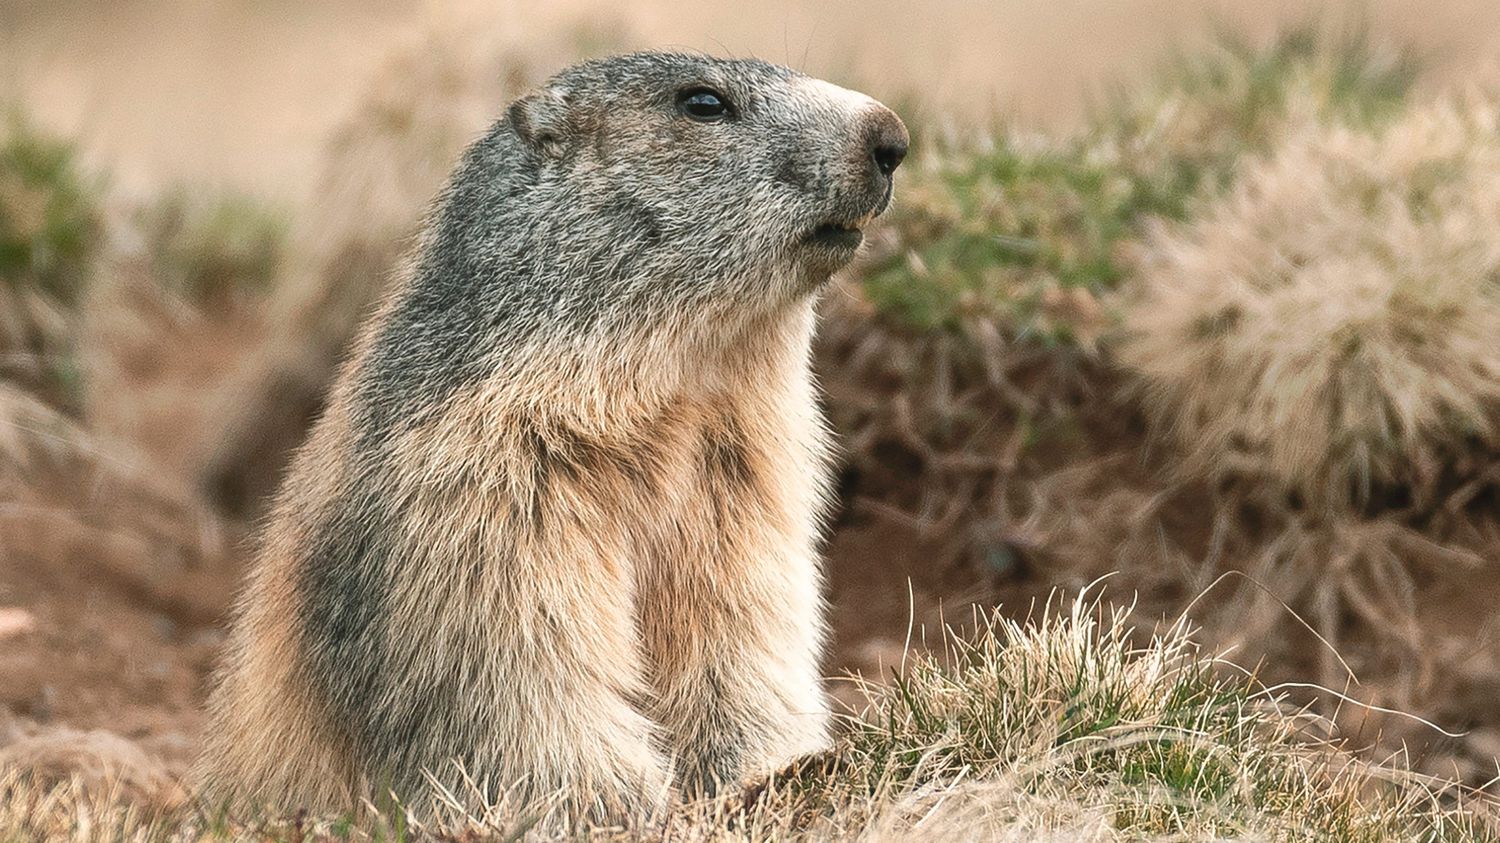 "Jamais je n'aurais imaginé que certains s'en délectaient", un député veut faire interdire la chasse à la marmotte en France